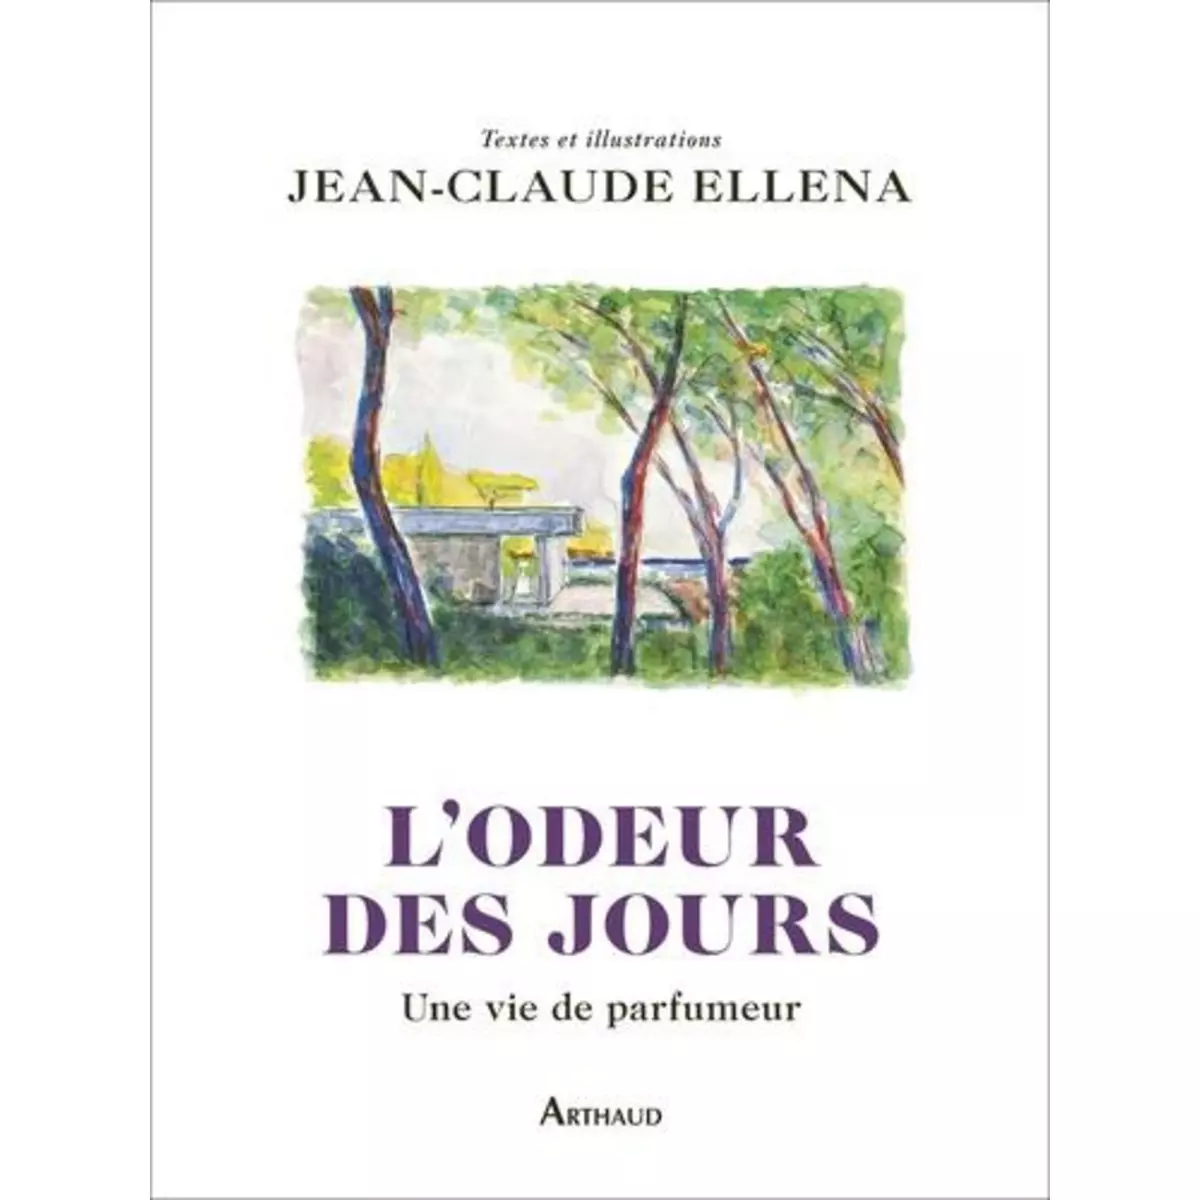  L'ODEUR DES JOURS. UNE VIE DE PARFUMEUR, Ellena Jean-Claude